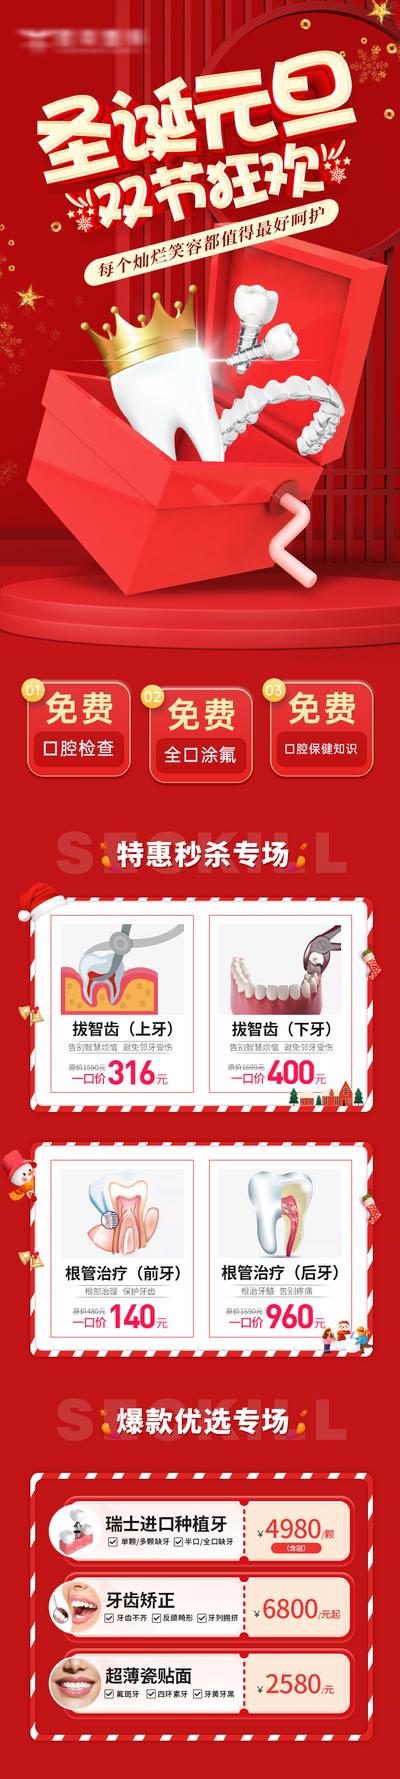 南门网 专题设计 长图 饮料 口腔 公历节日 圣诞节 元旦 双节 促销 活动 红金